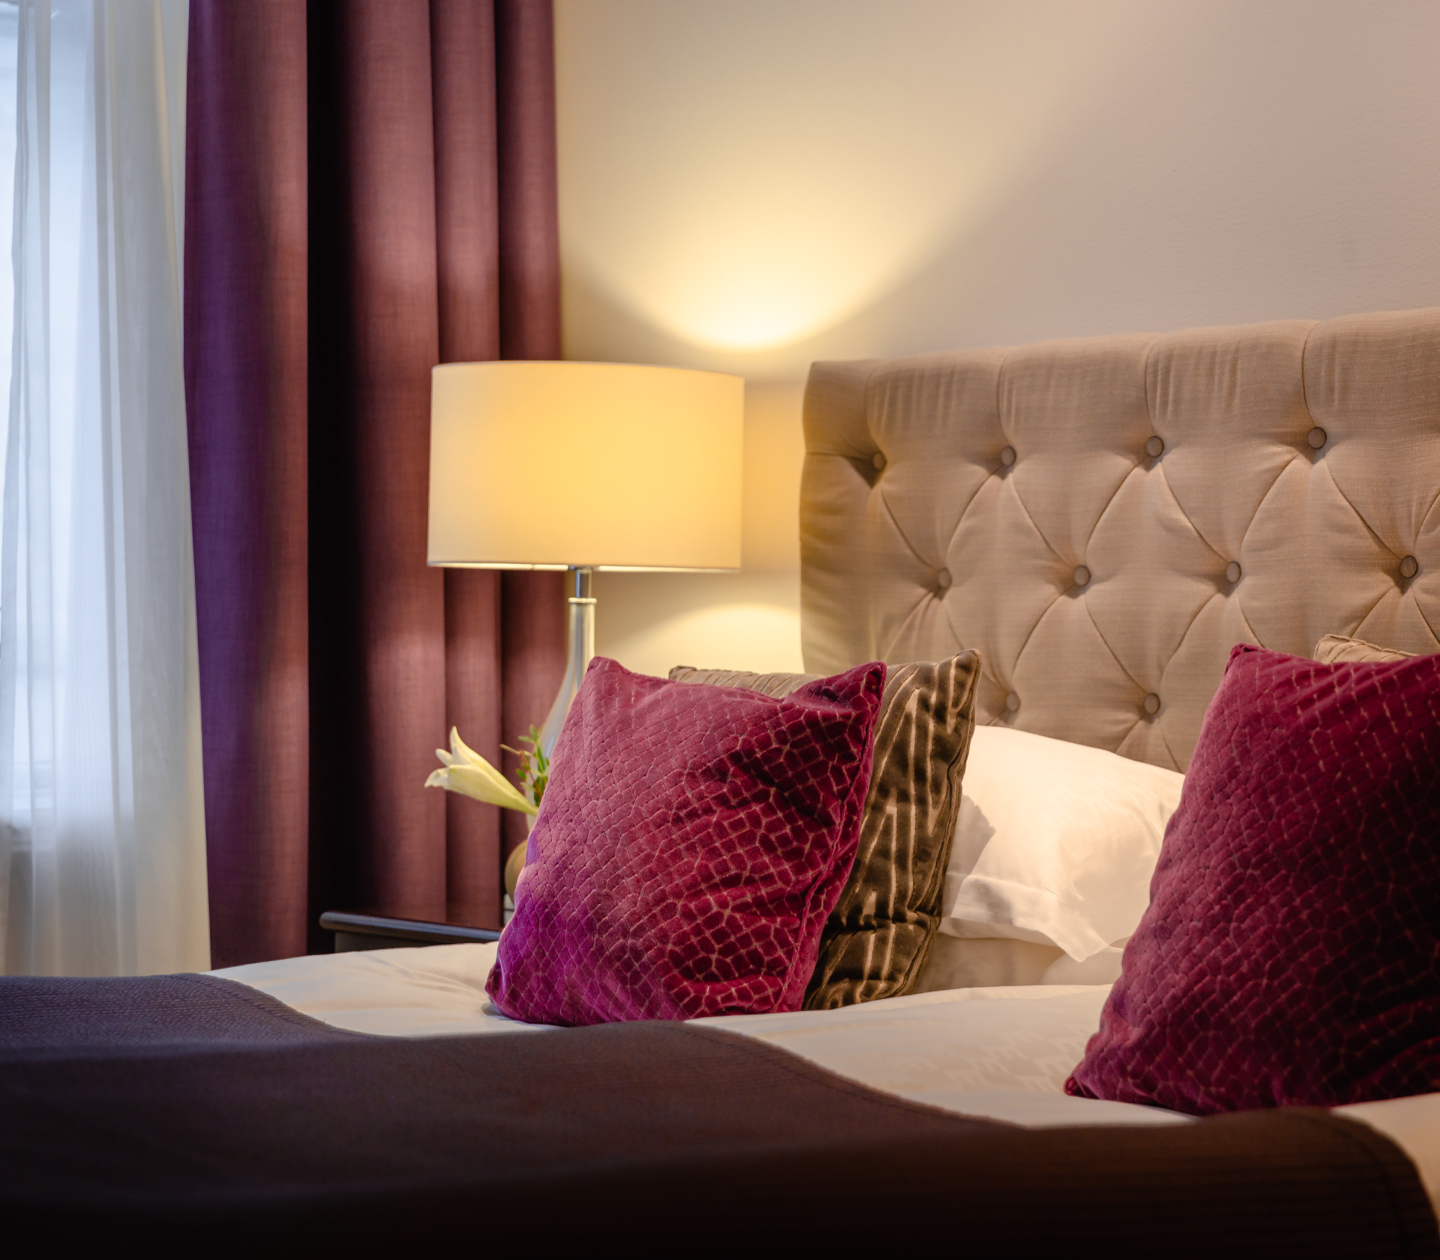 Mysigt hotellrum med säng, lila kuddar och sänglampa